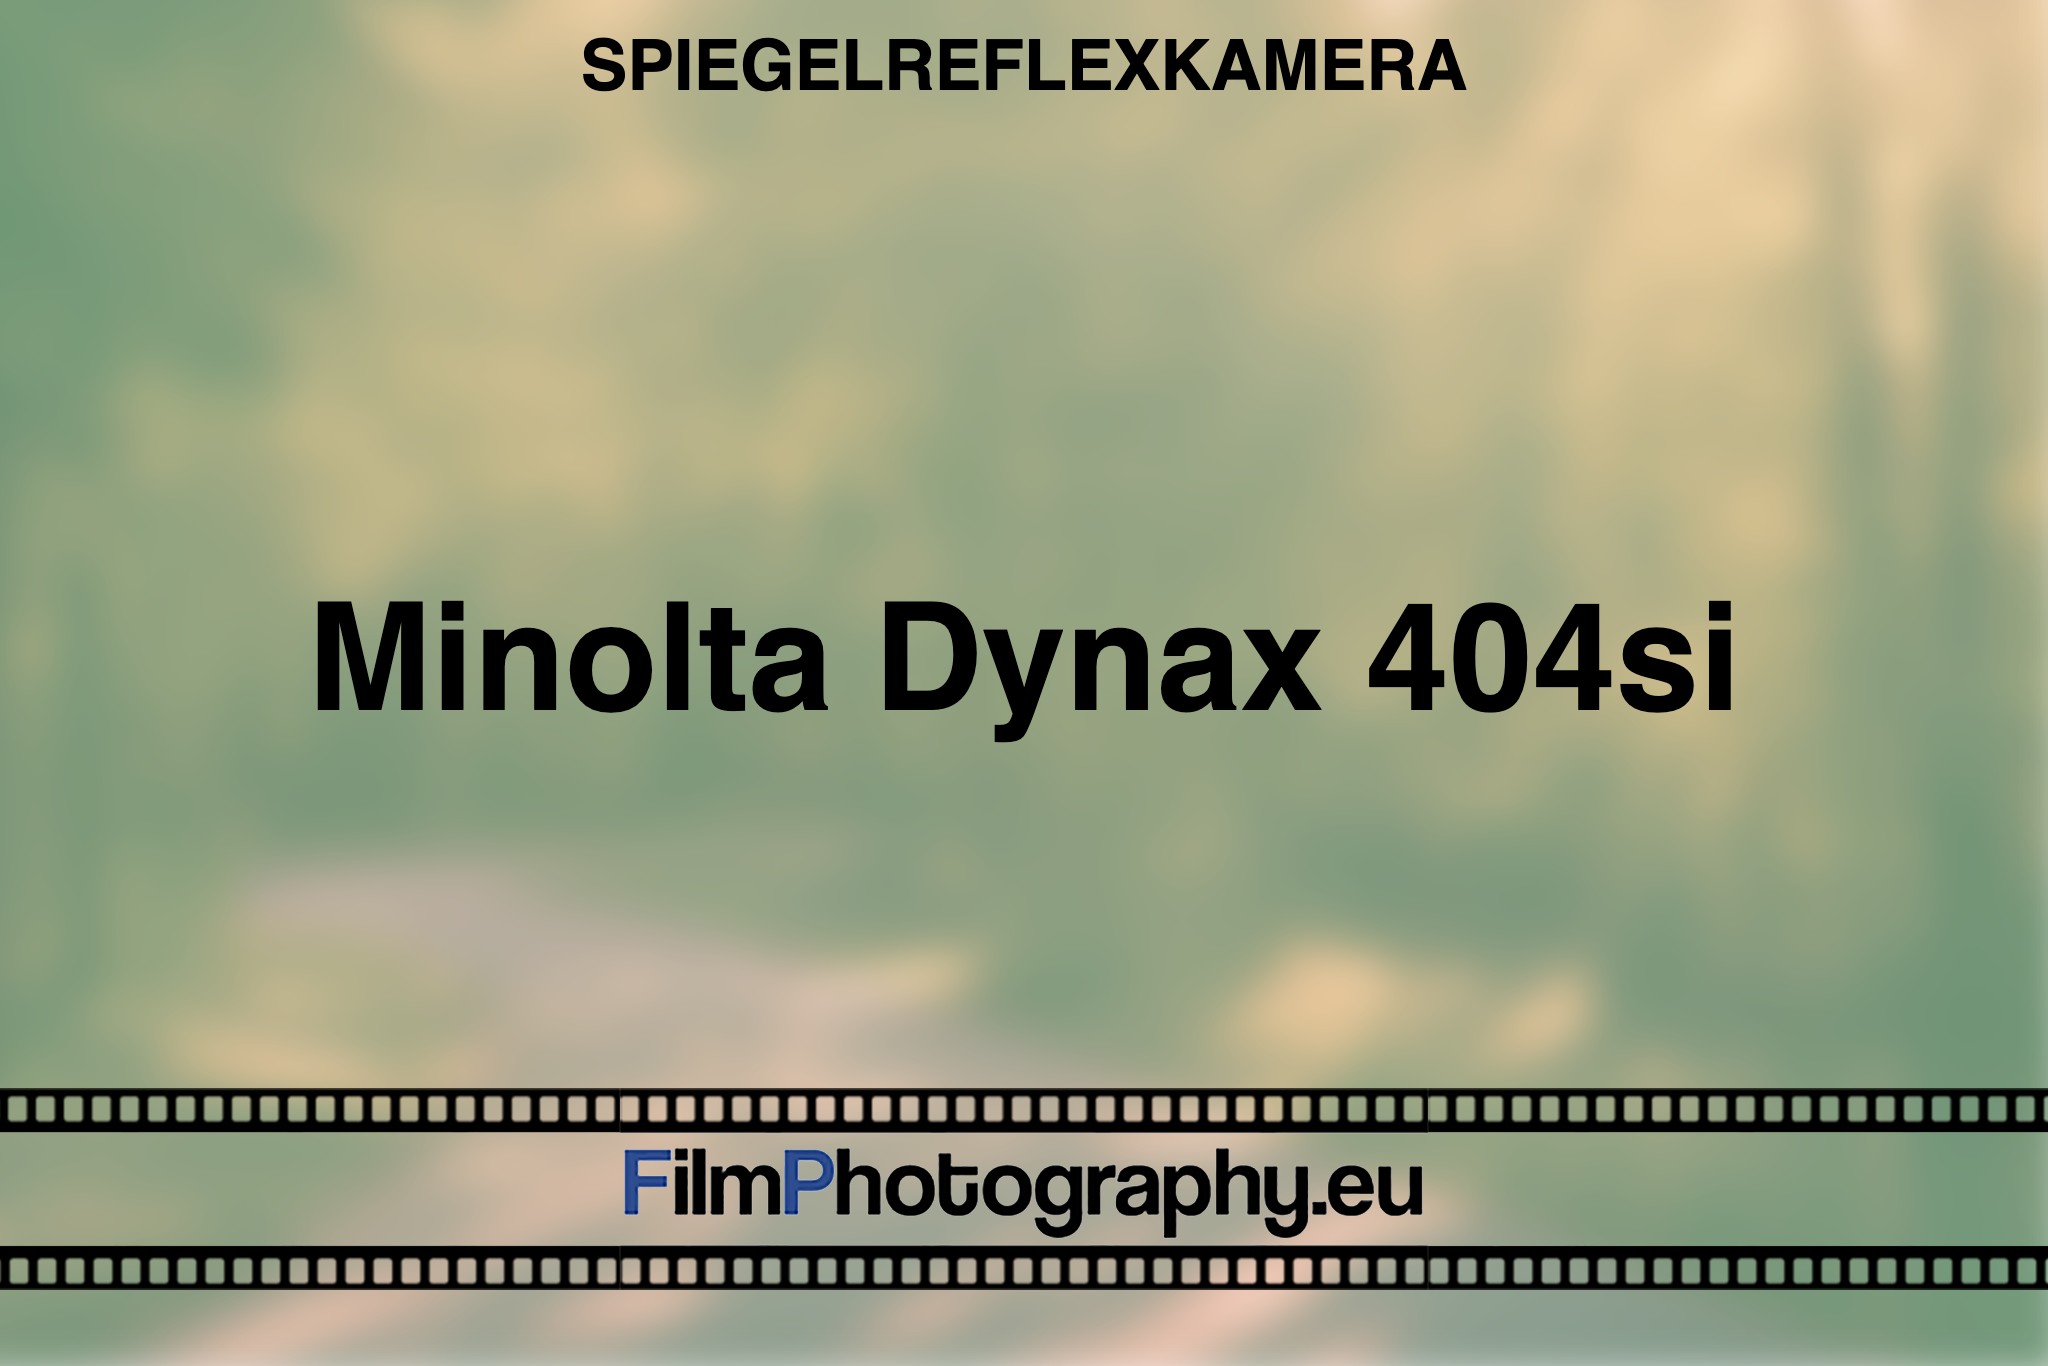 minolta-dynax-404si-spiegelreflexkamera-bnv